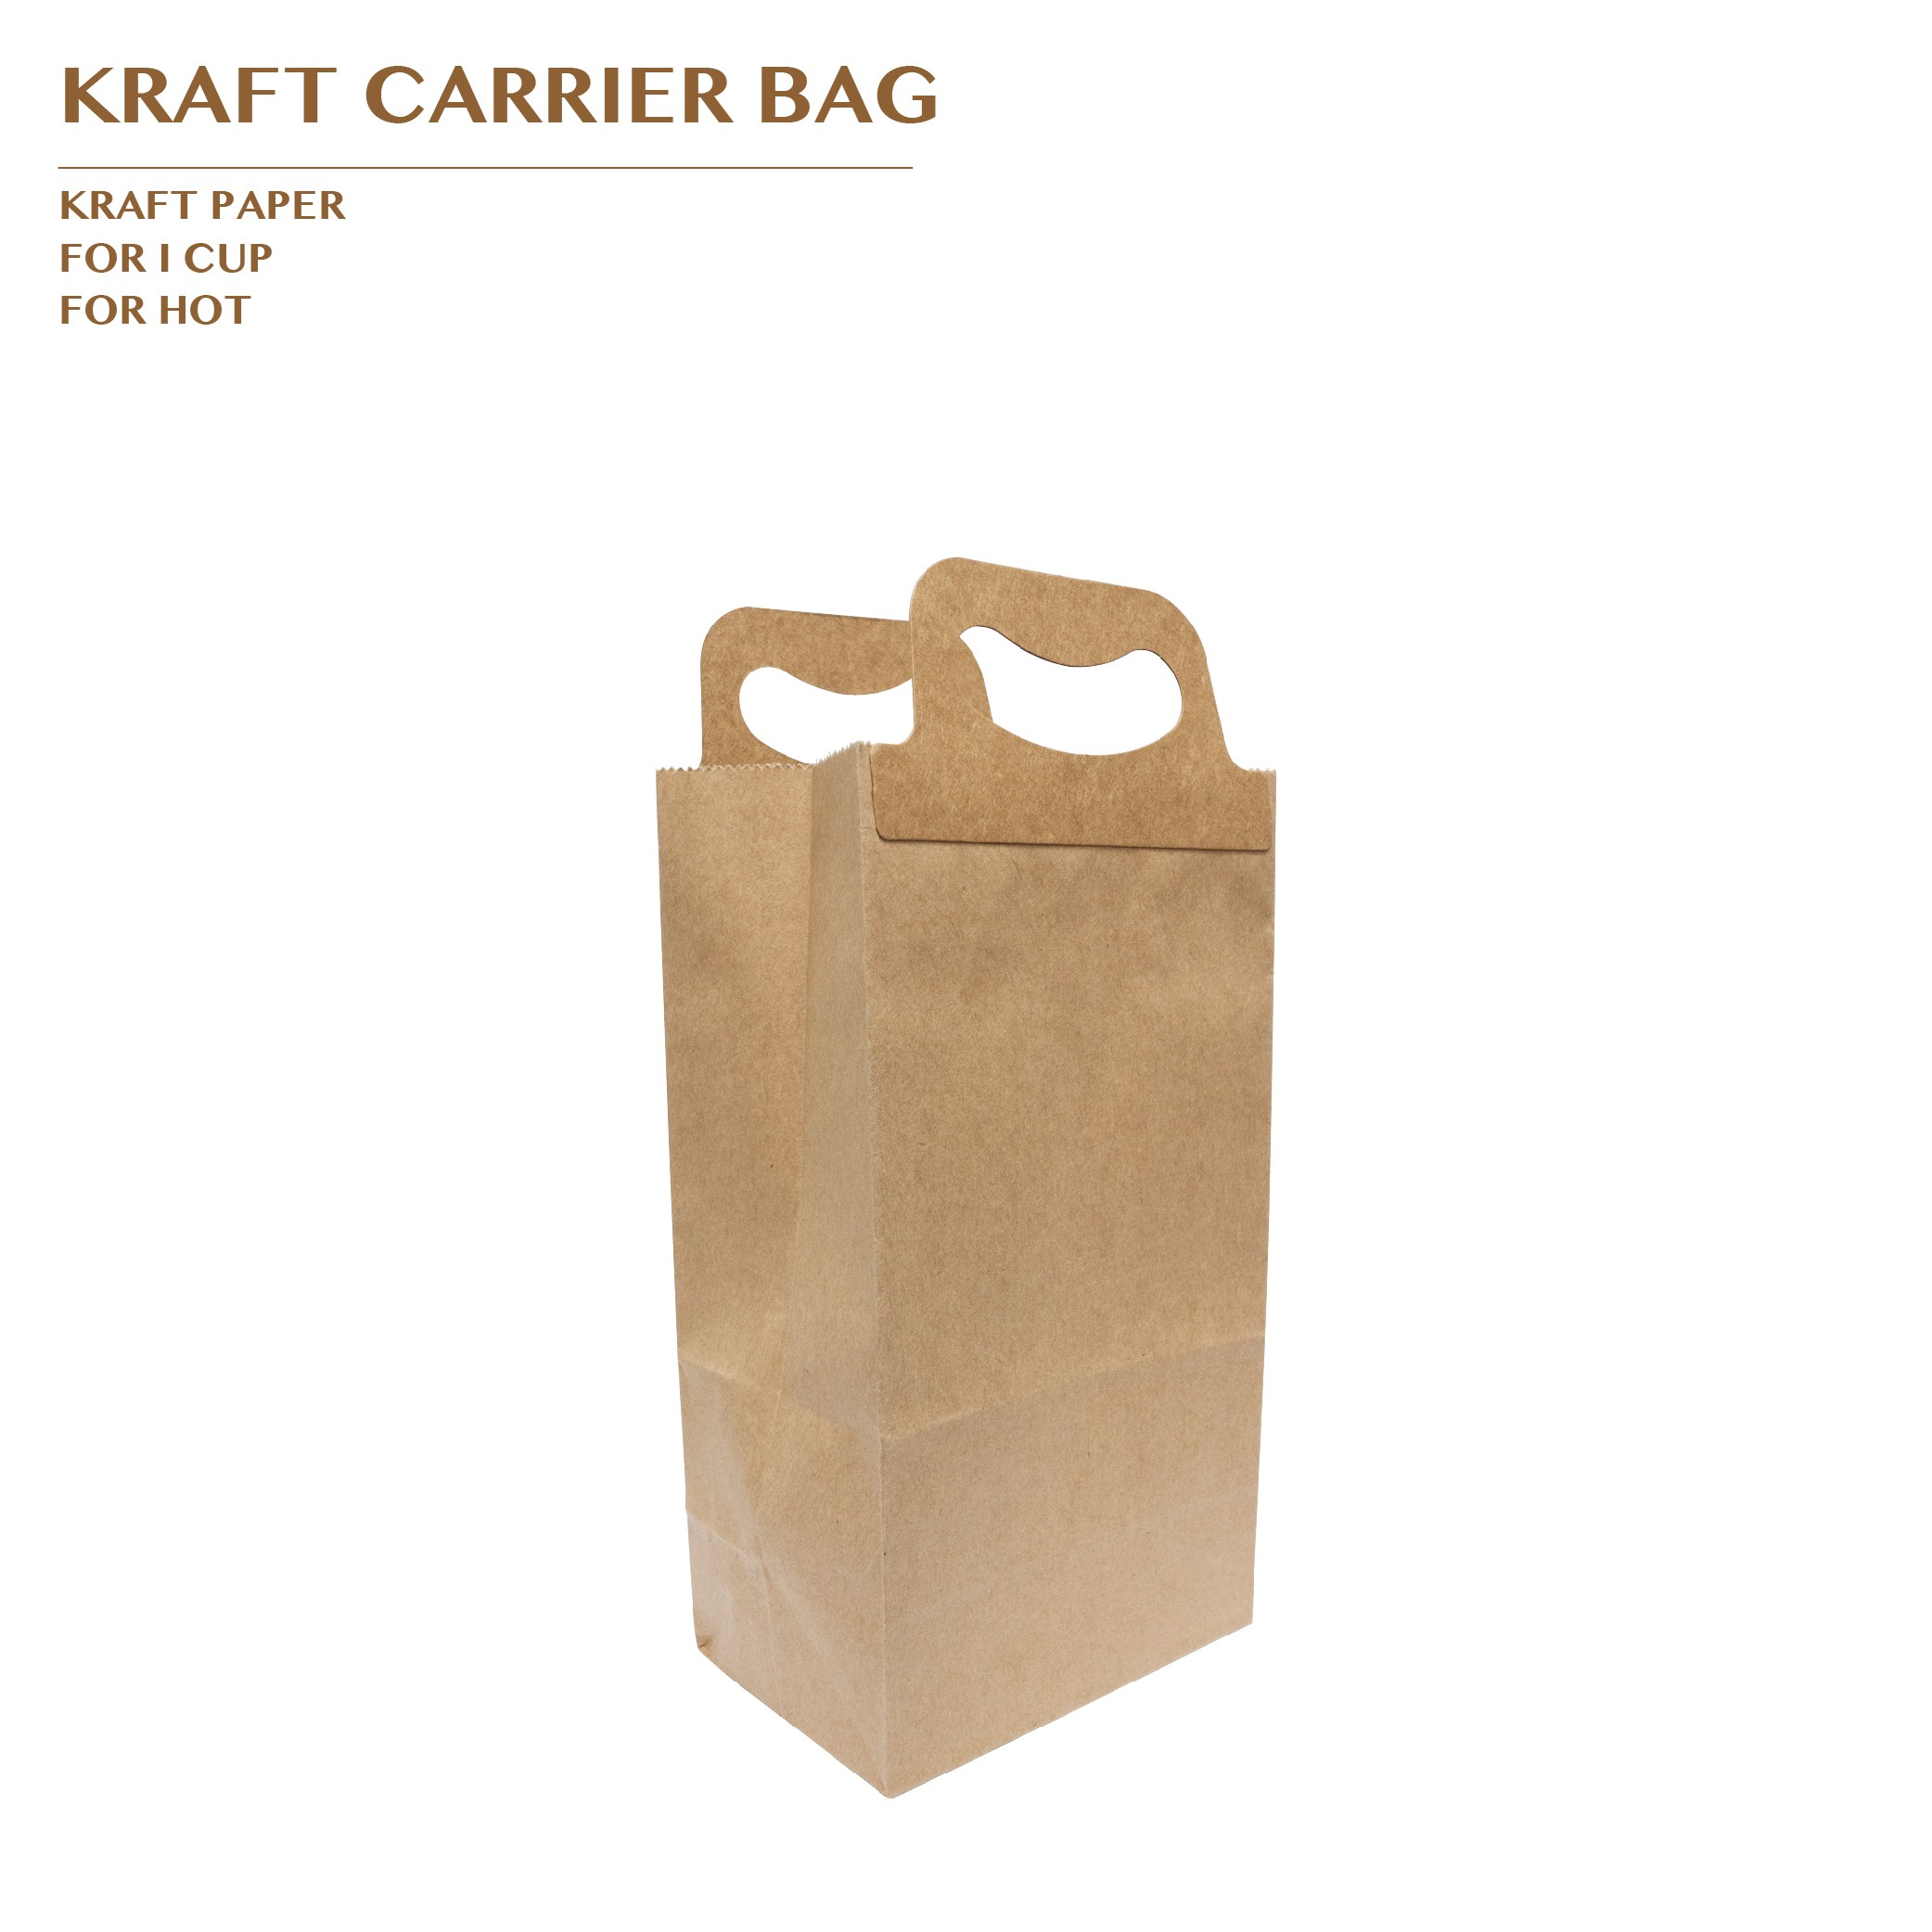 PRO-ORDER KRAFT CARRIER BAG FOR 1 CUP 1000PCS/CTN